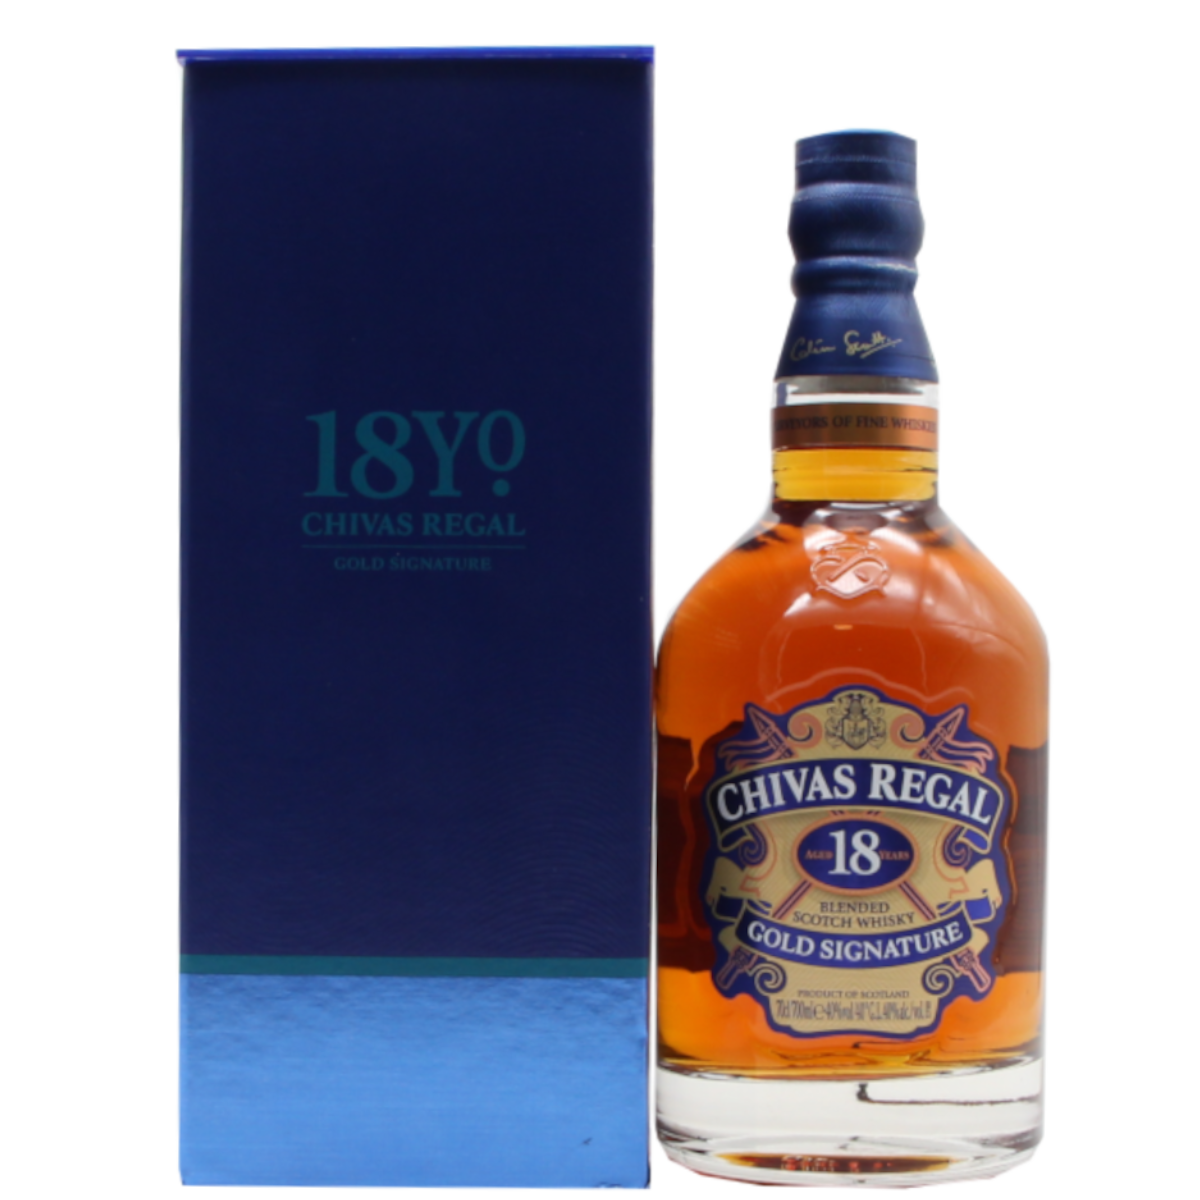 Chivas Regal 18 Jahre Gold Signature Scotch Whisky | 40 % | 0,7 L